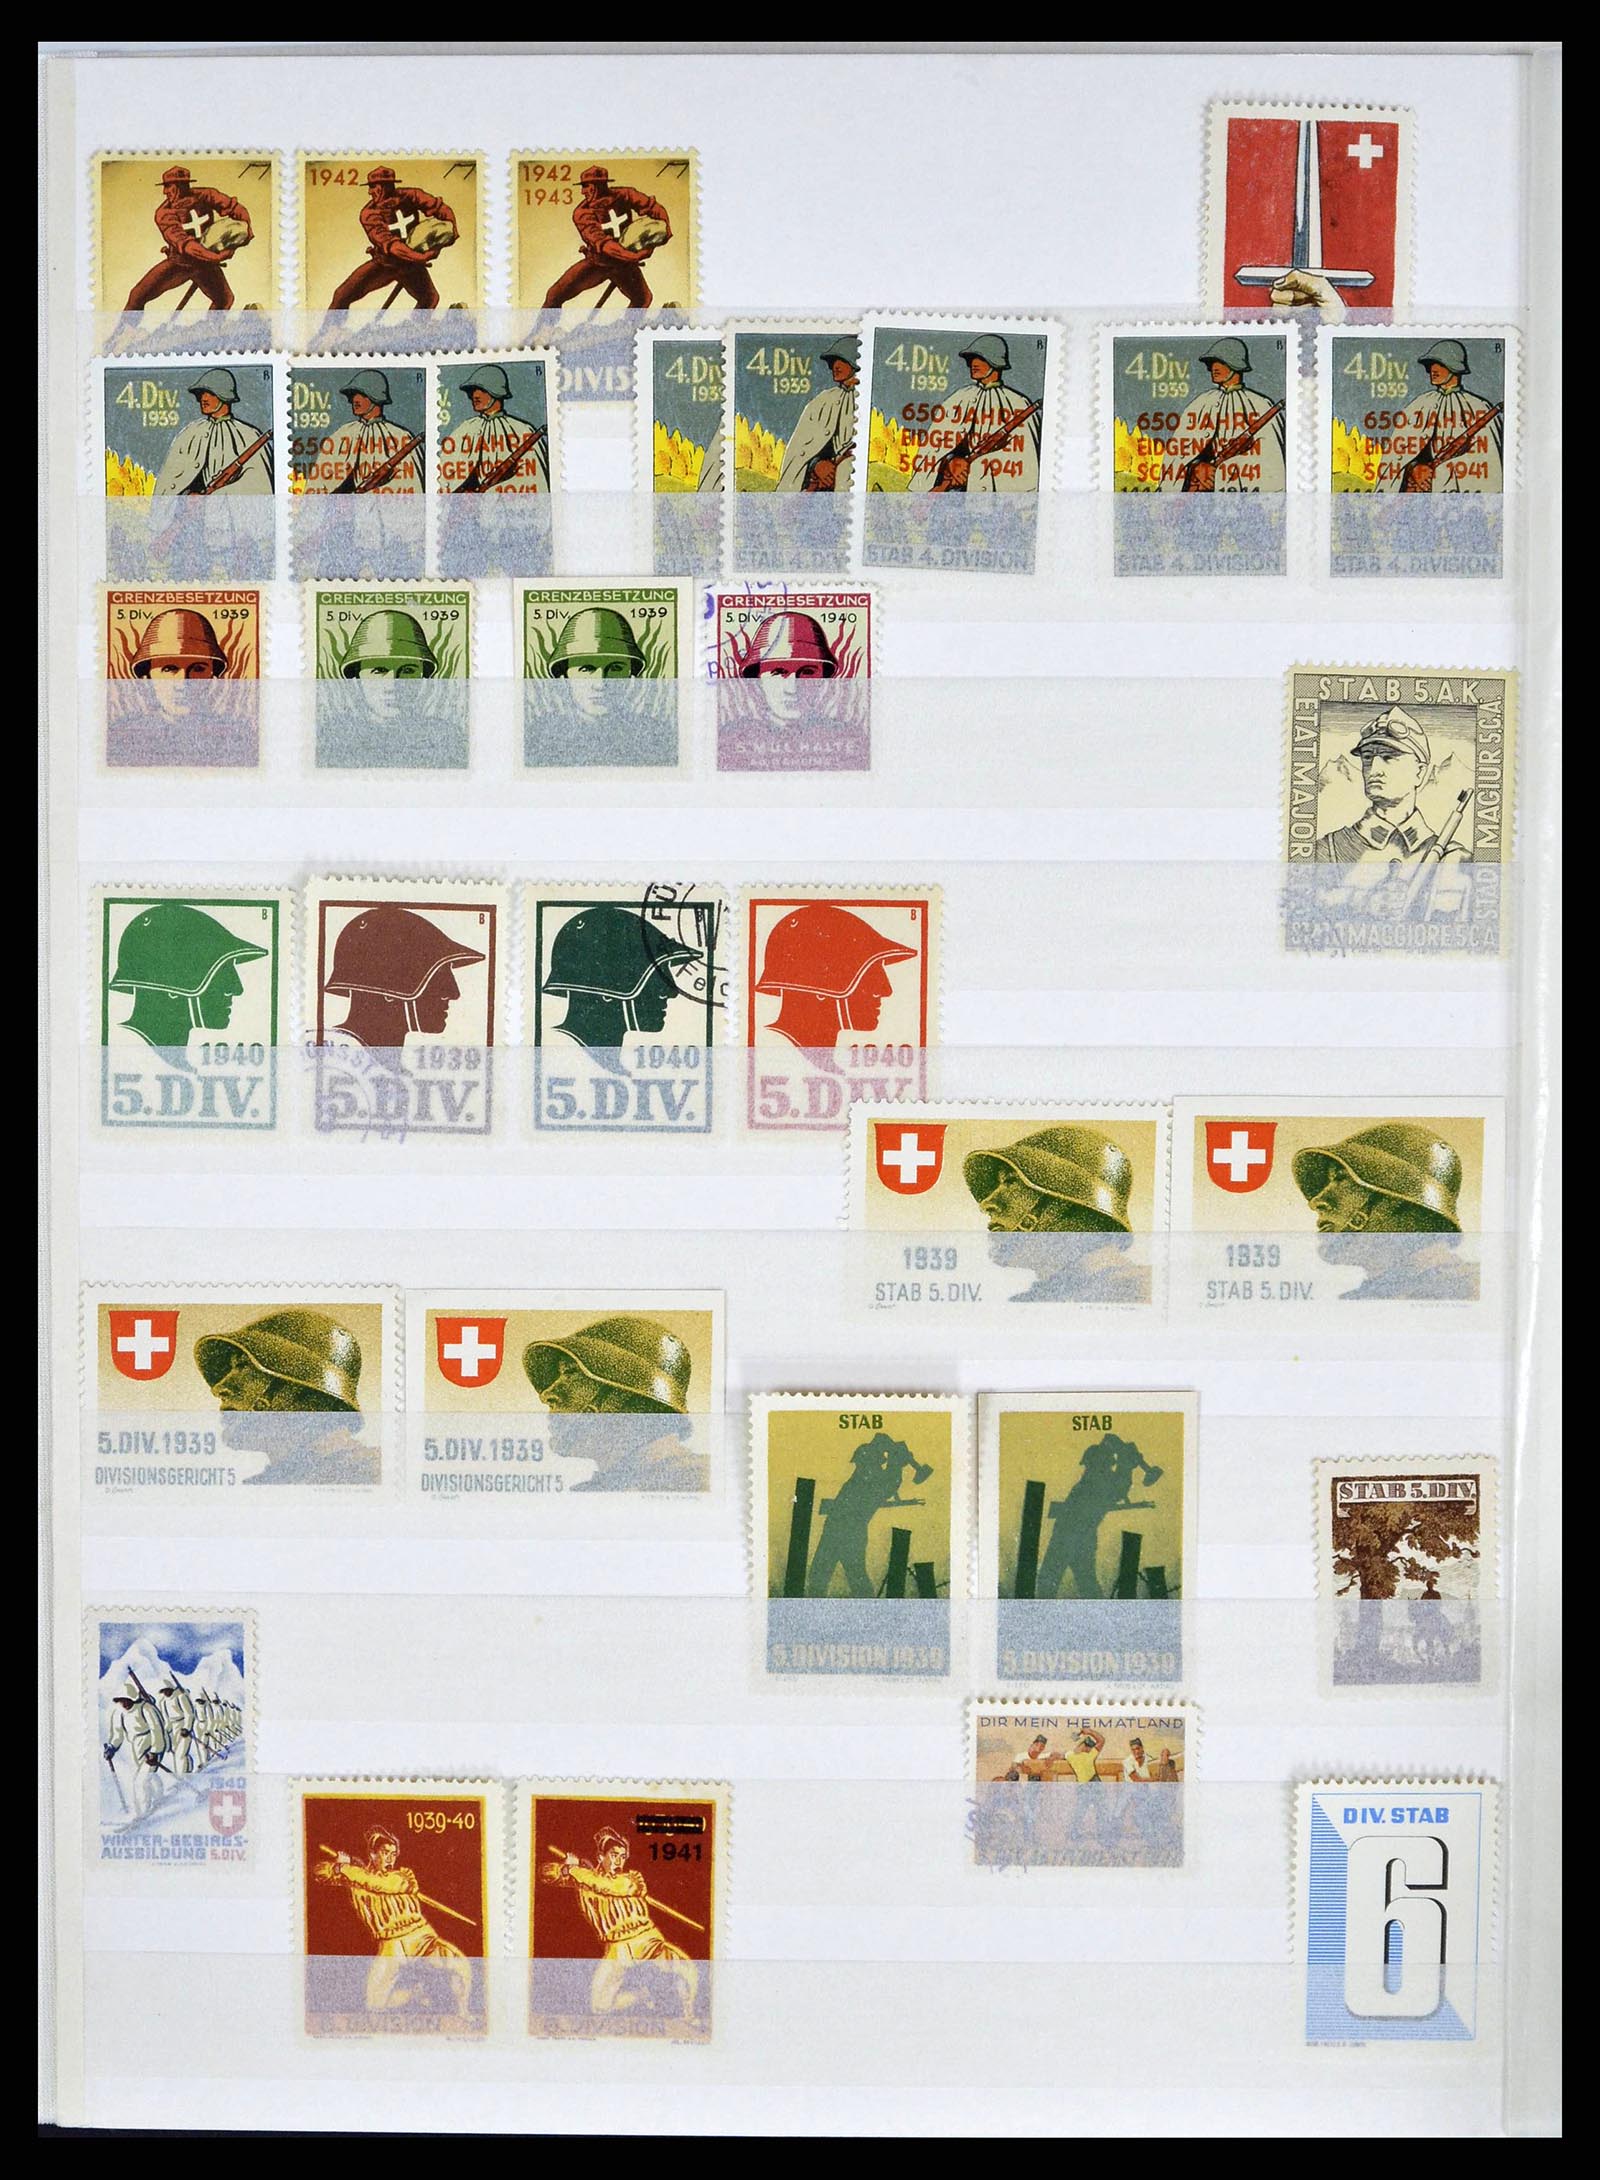 38695 0010 - Stamp collection 38695 Switzerland soldierstamps 1914-1945.